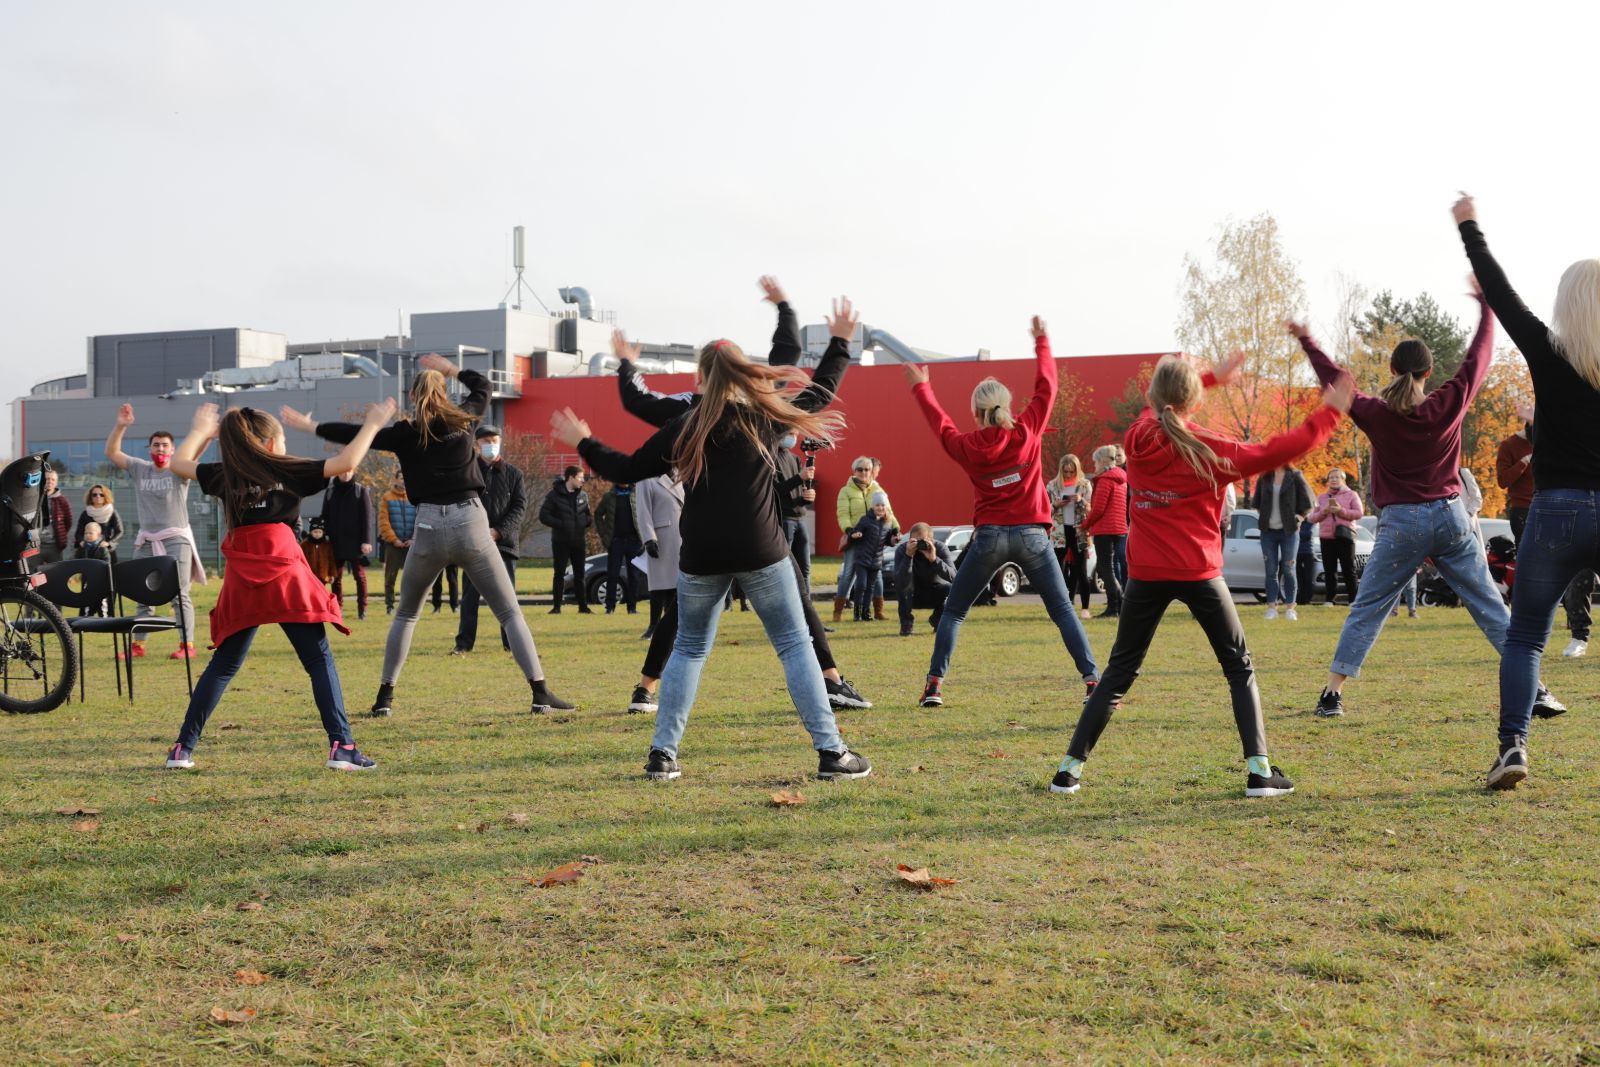 Visą spalį trukusį unikalų projektą „Panevėžys kviečia“ šį sekmadienį užbaigė šokio ir muzikos sintezė Kultūros ir poilsio parke. Norintieji galėjo pasimokyti bačiatos žingsnelių ar argentinietiško tango, sudalyvauti „flashmobe“. Visą keturių renginių ciklą vainikavo Leono Somovo ir Diletos pirmą kartą pristatomas bendras projektas.